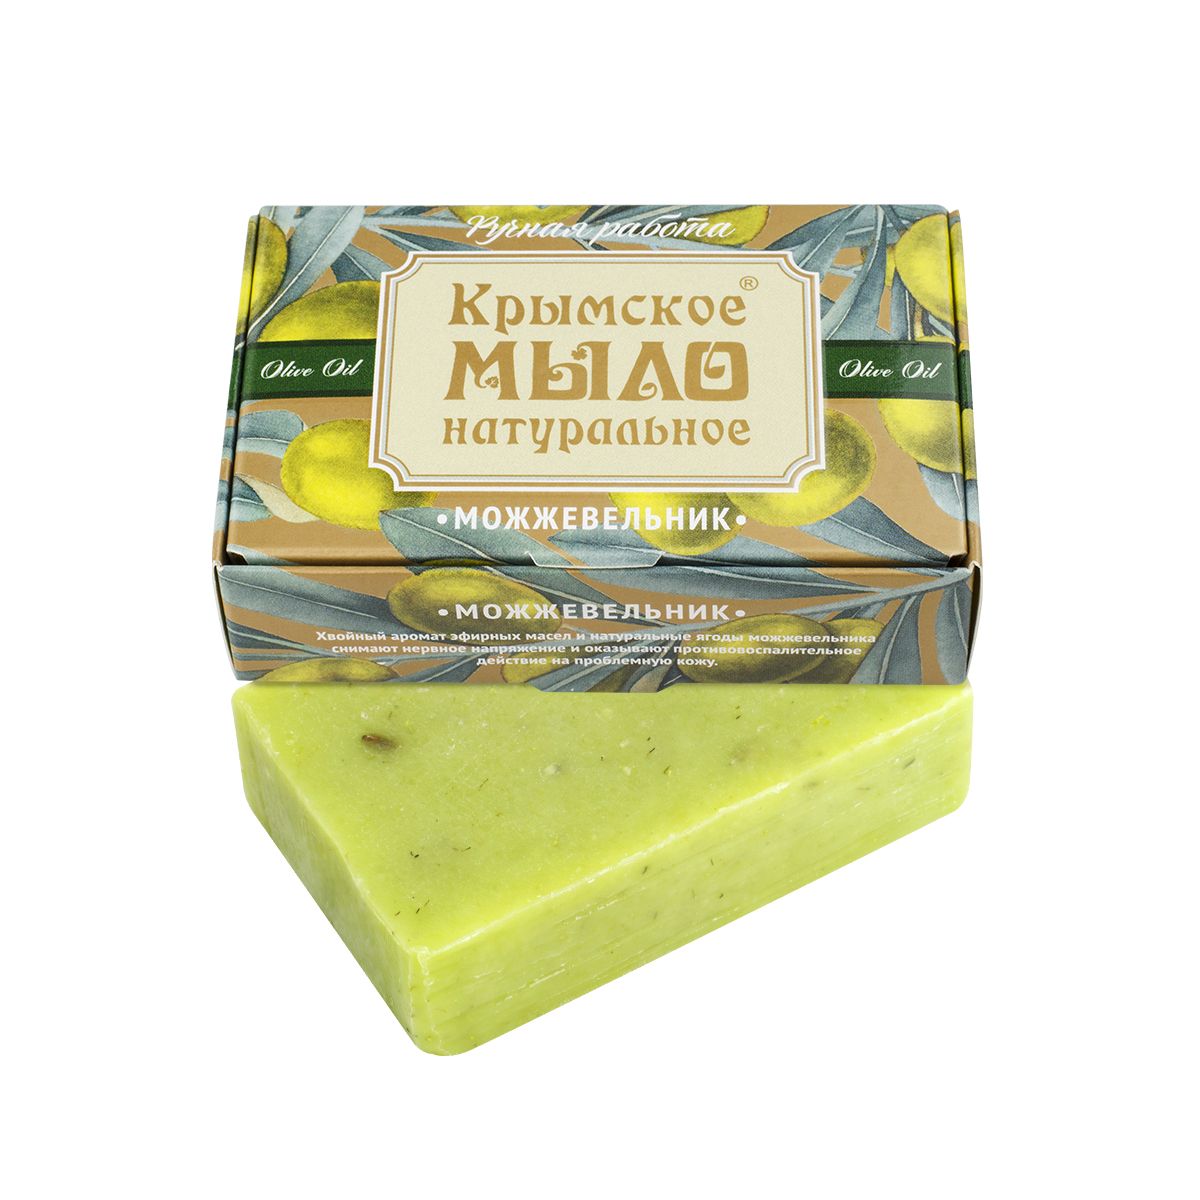 Крымское натуральное мыло на оливковом масле МОЖЖЕВЕЛЬНИК,100г купить в онлайн экомаркете